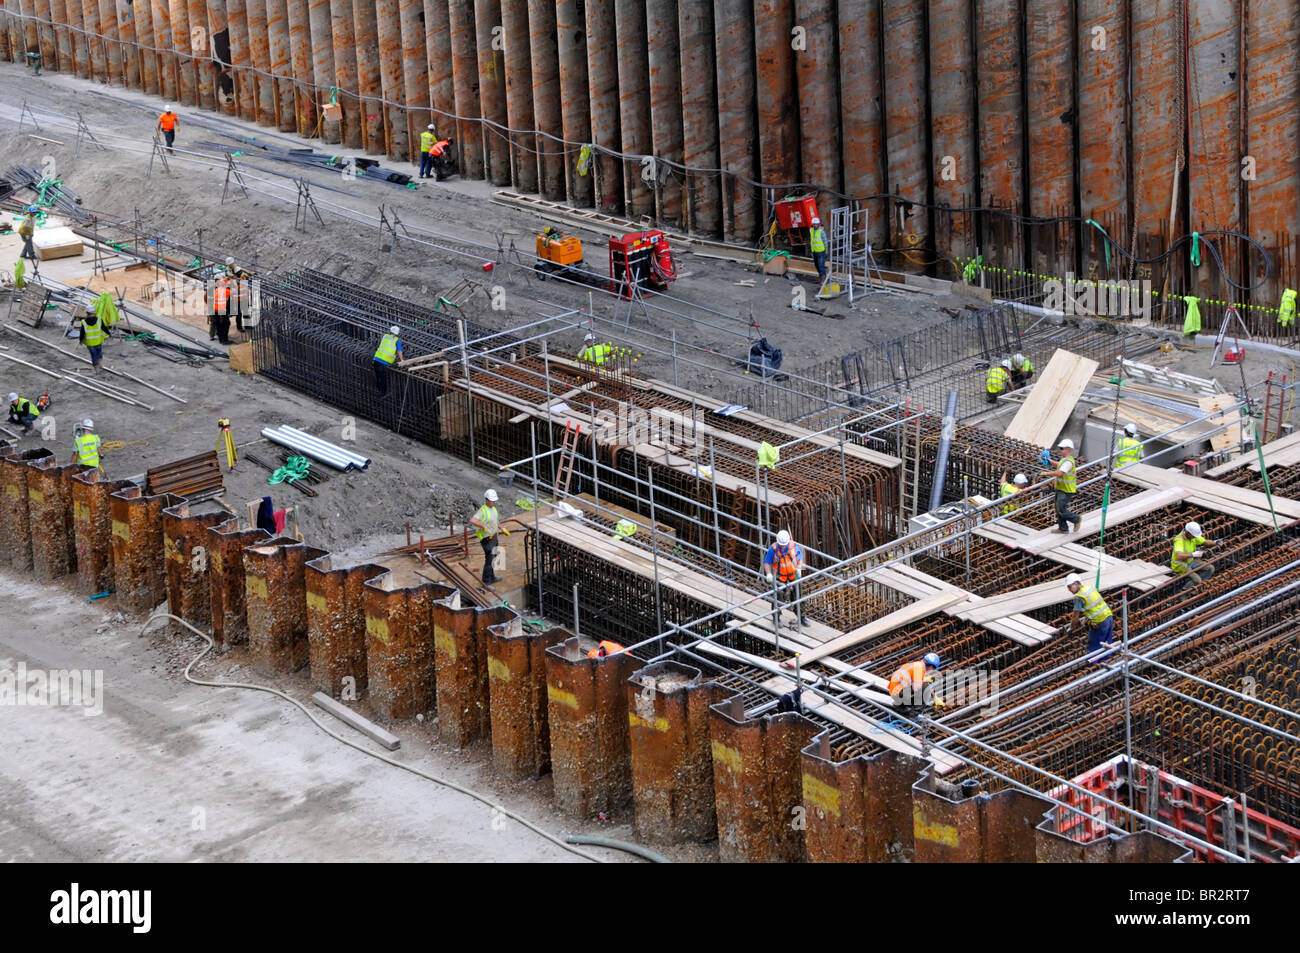 Construction de l'industrie de la construction les travailleurs de chantier d'infrastructure à cerbade à canari Gare de Wharf pour Elizabeth Line Crossrail train Londres Banque D'Images